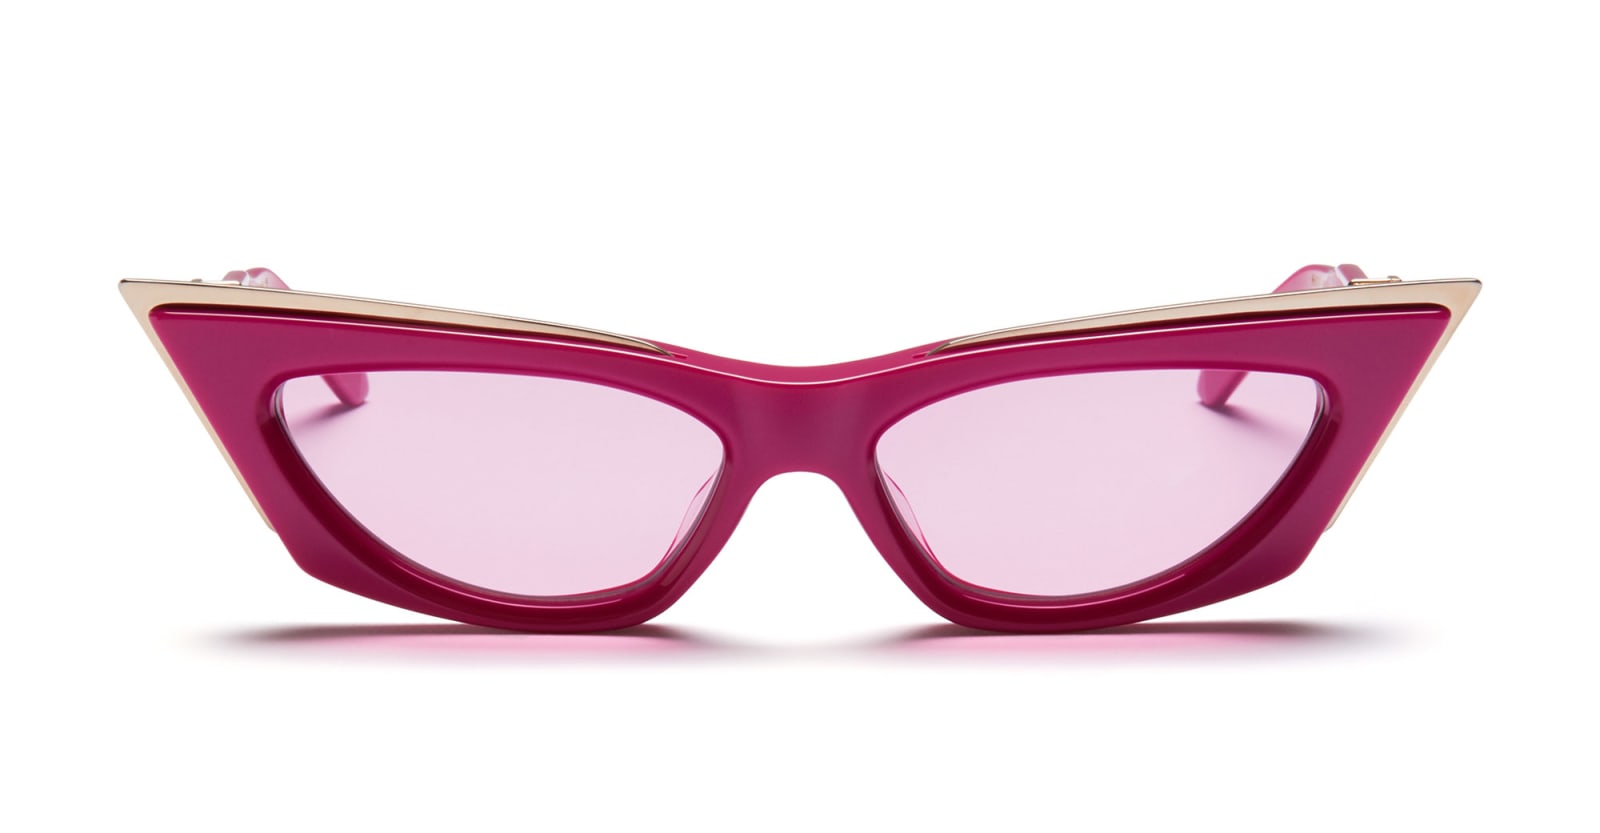 Valentino Goldcut-i - Pink / White Gold Sunglasses